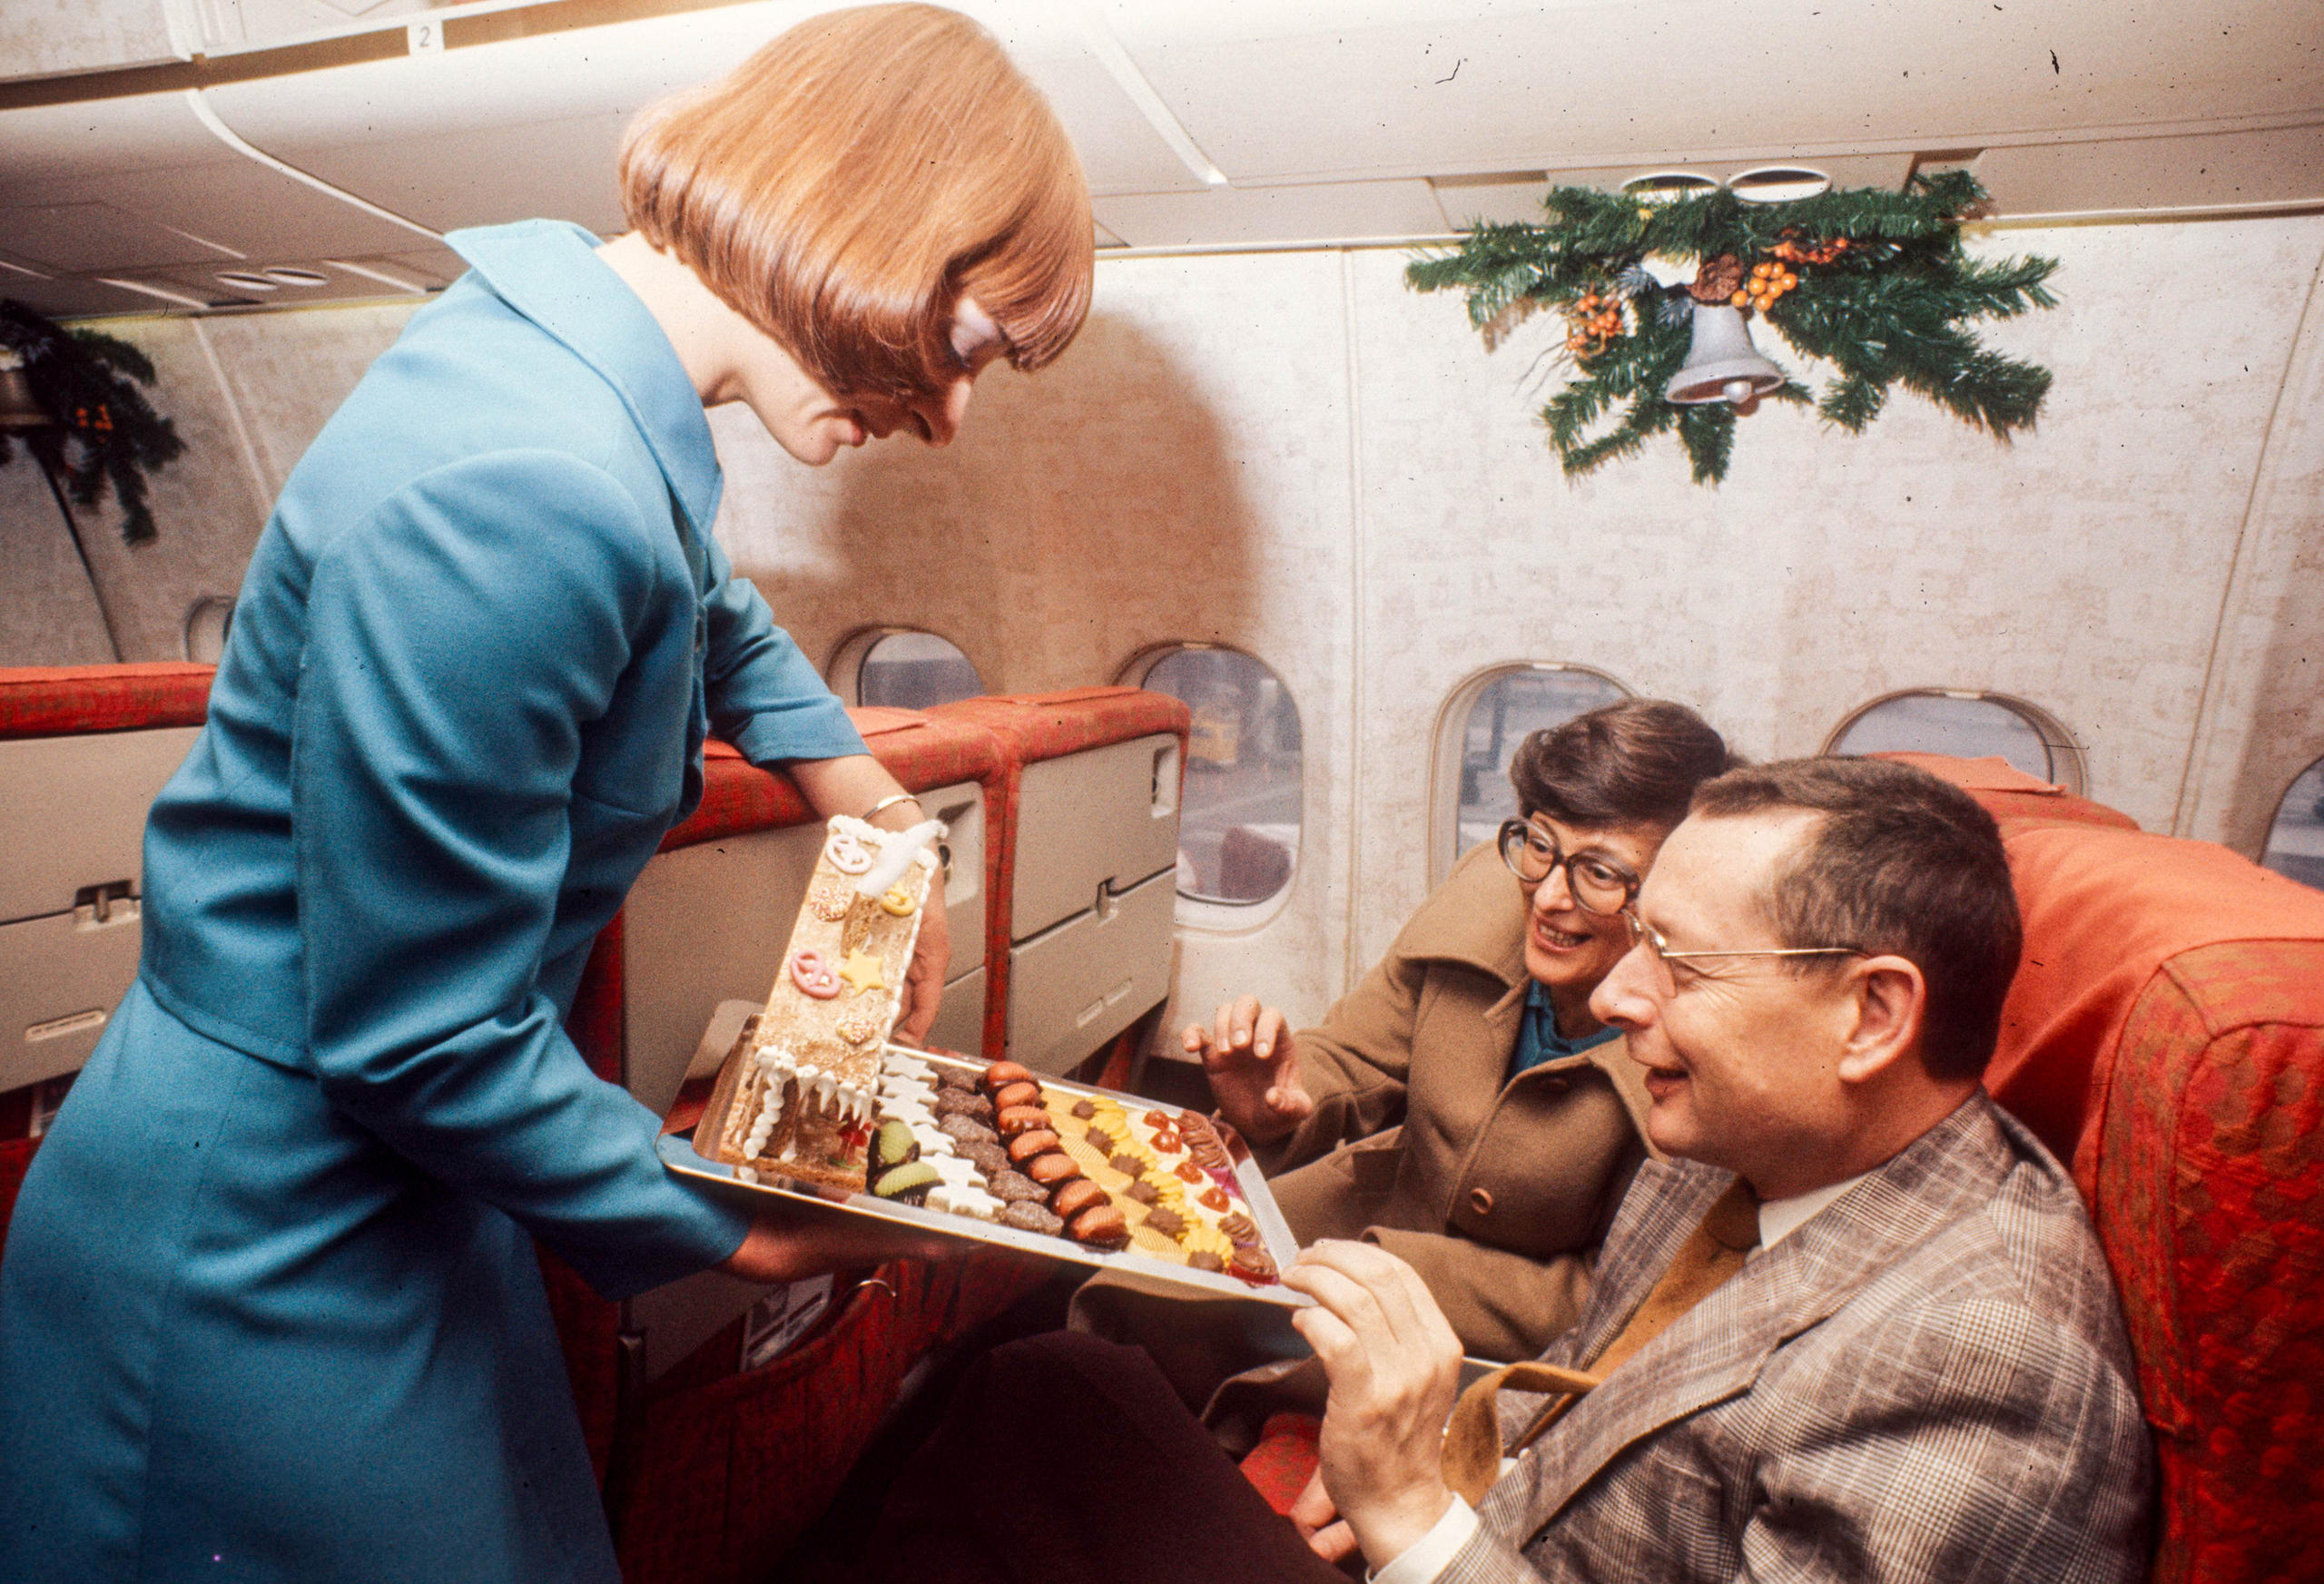 مضيّفة تقدم مخبوزات عيد الميلاد لرجل وامرأة من الركاب